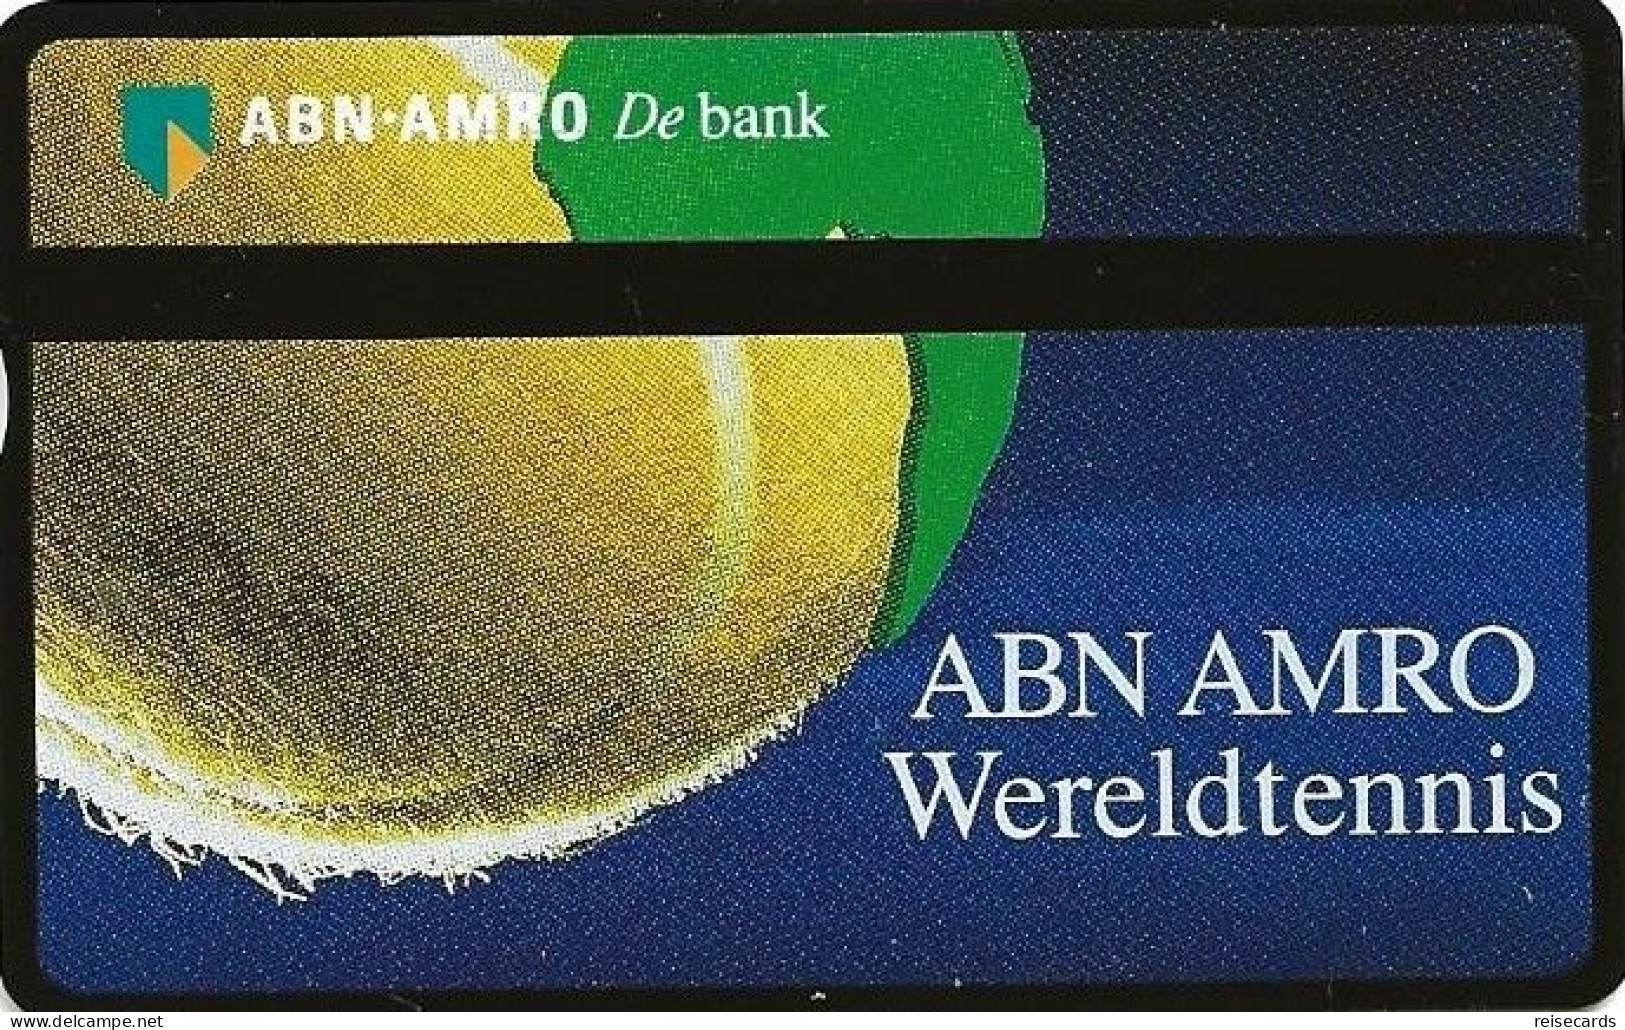 Netherlands: Ptt Telecom - 1992 248E ABN AMRO Wereldtennis. Mint - Privat